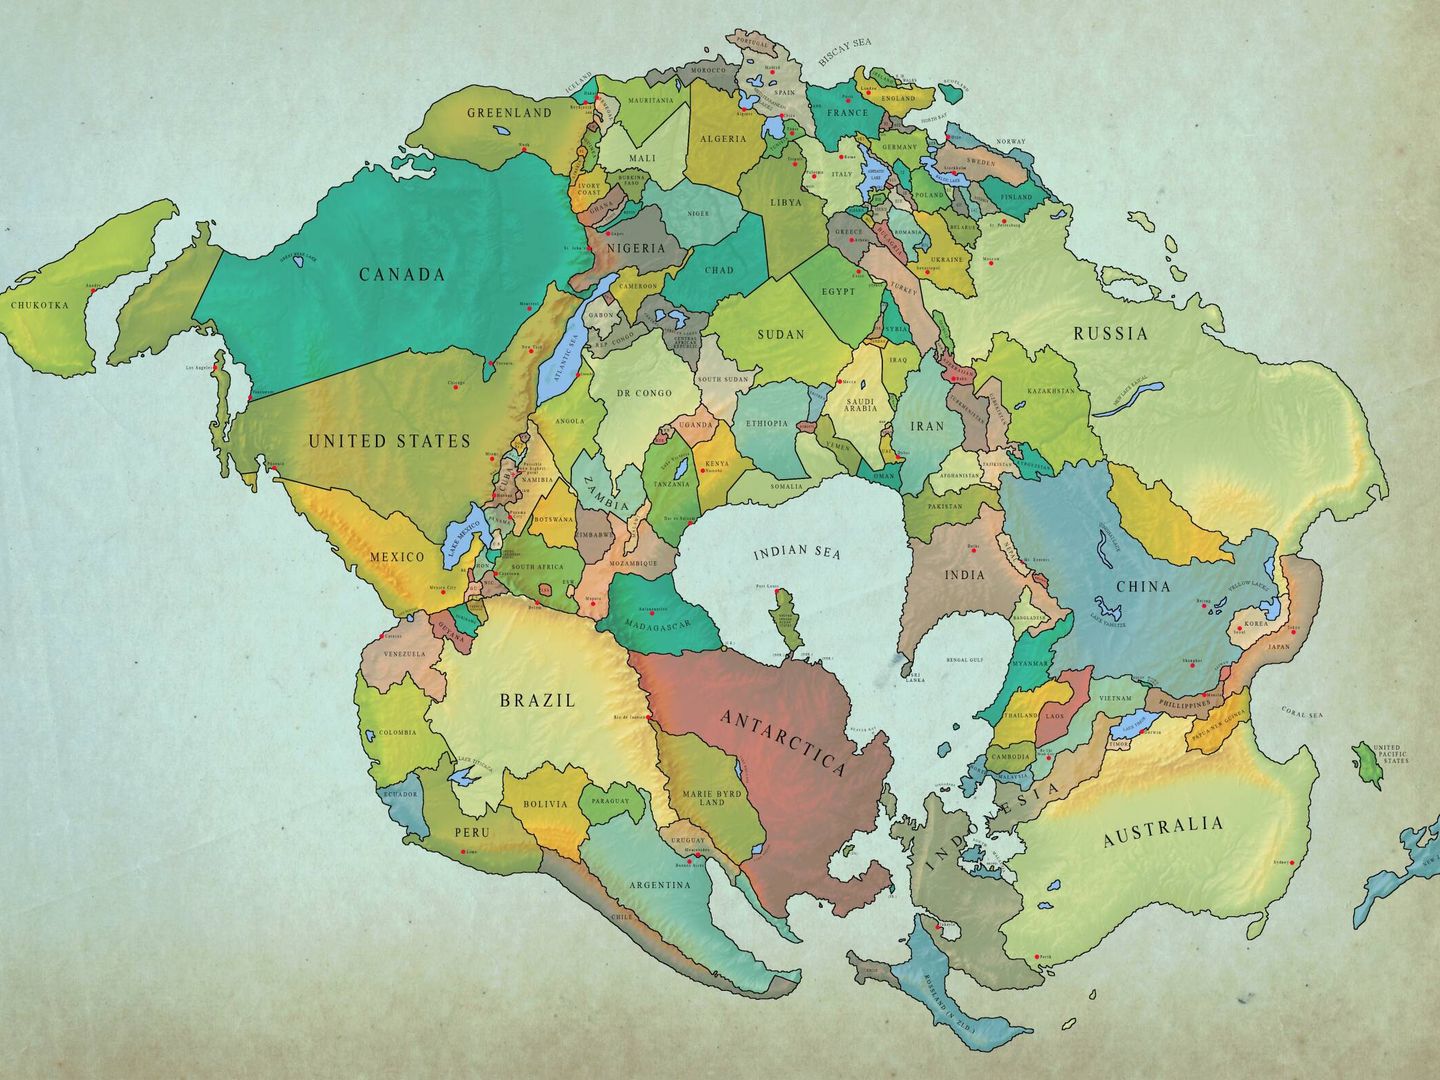 Así será la Tierra dentro de 250 millones de años, según este mapa. (Reddit/MapPorn)